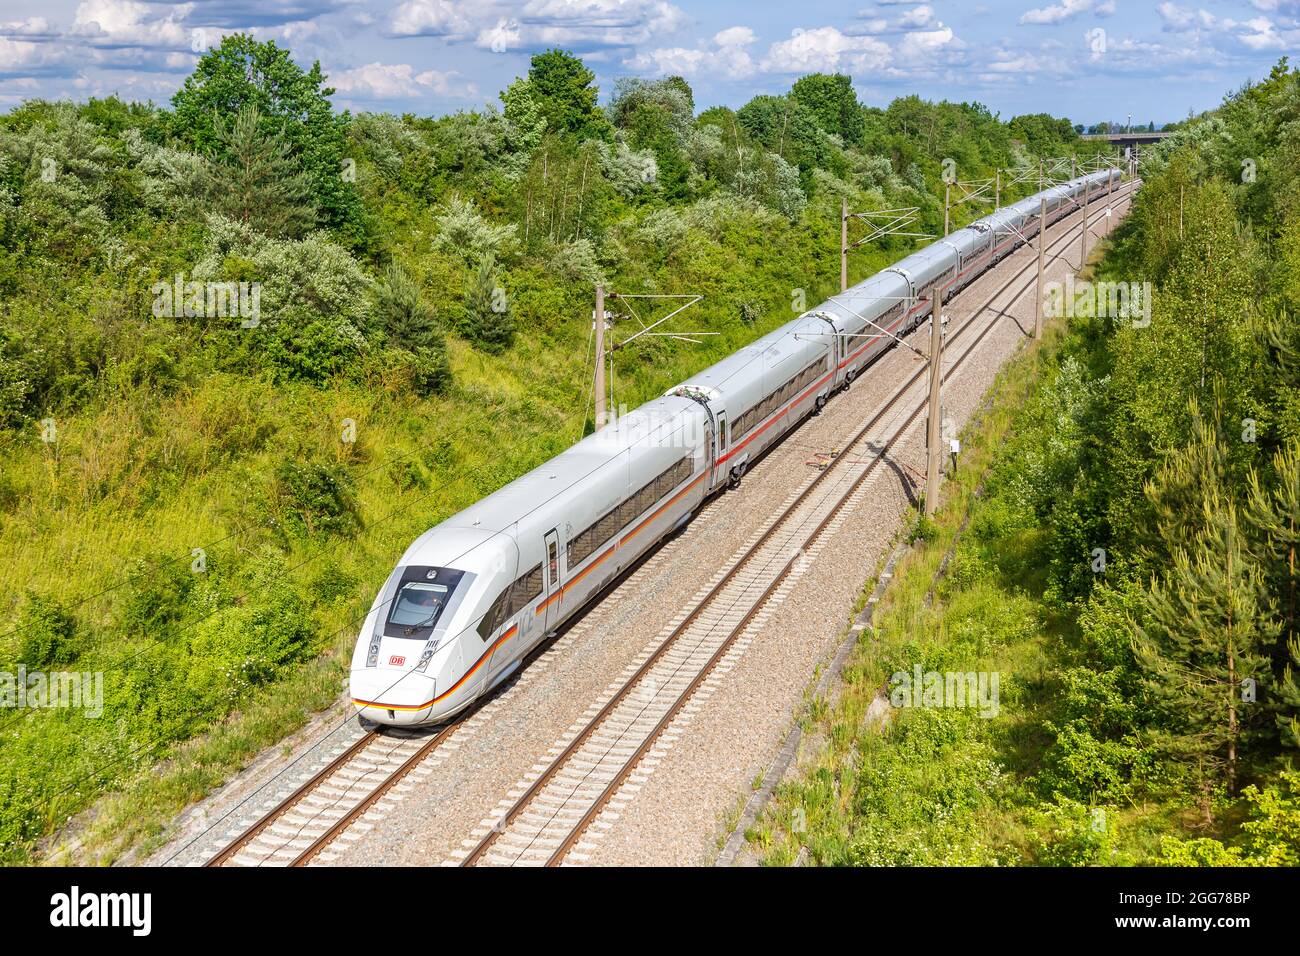 Stuttgart, Germany - June 12, 2021: XXL-ICE 4 Deutsche Bahn DB high-speed train railway line Mannheim-Stuttgart in Germany. Stock Photo